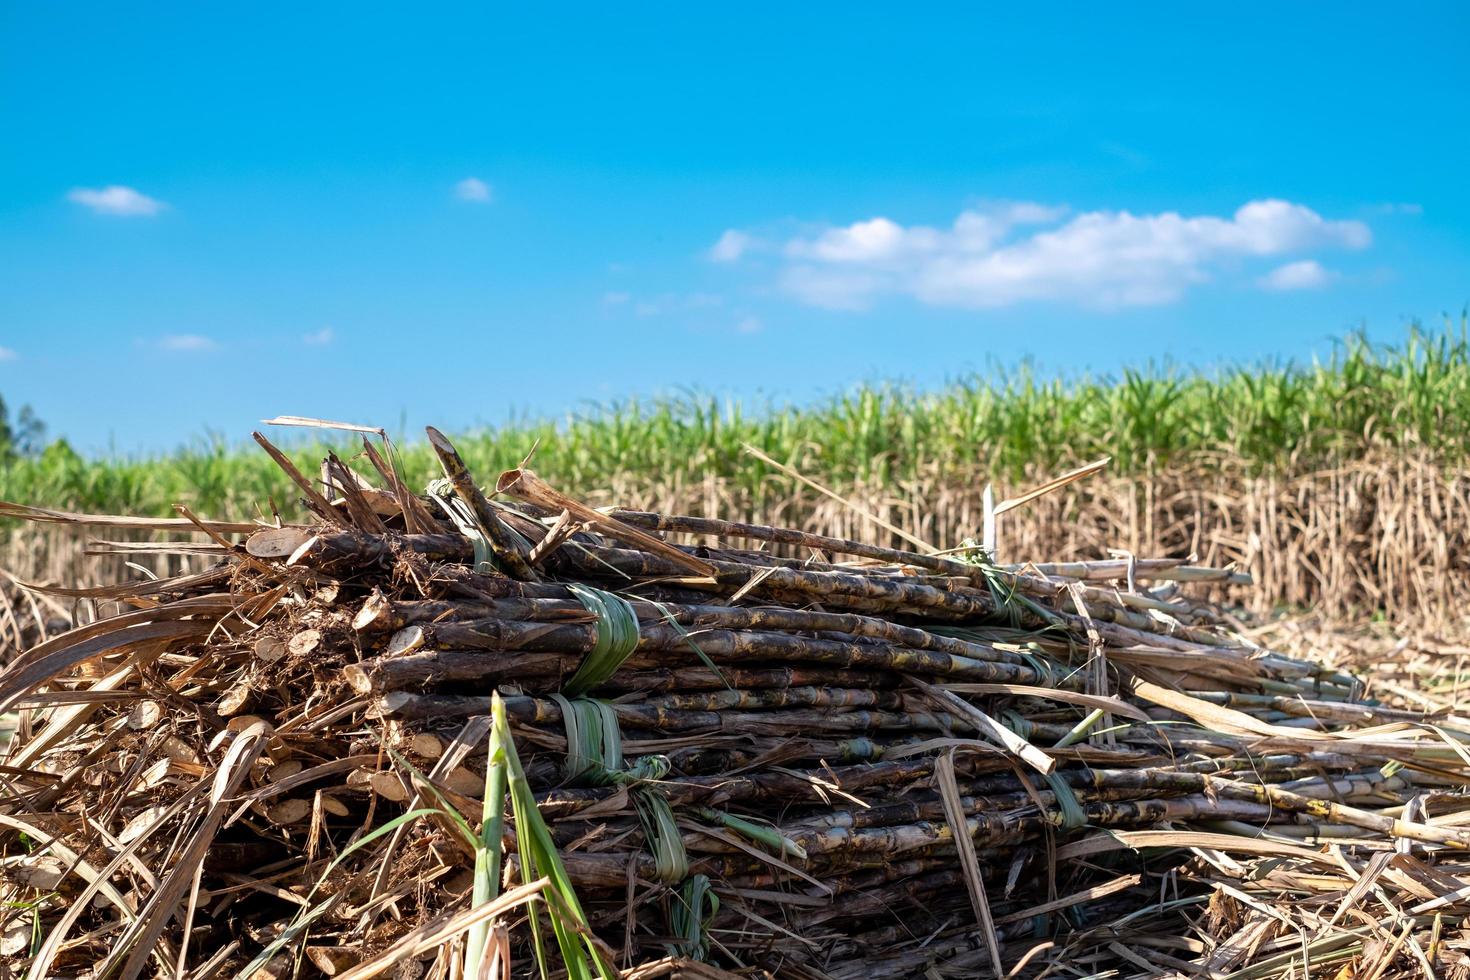 suikerriet, suiker riet oogst in suikerstok velden in de winter seizoen, heeft groen en versheid. shows de vruchtbaarheid van de bodem foto